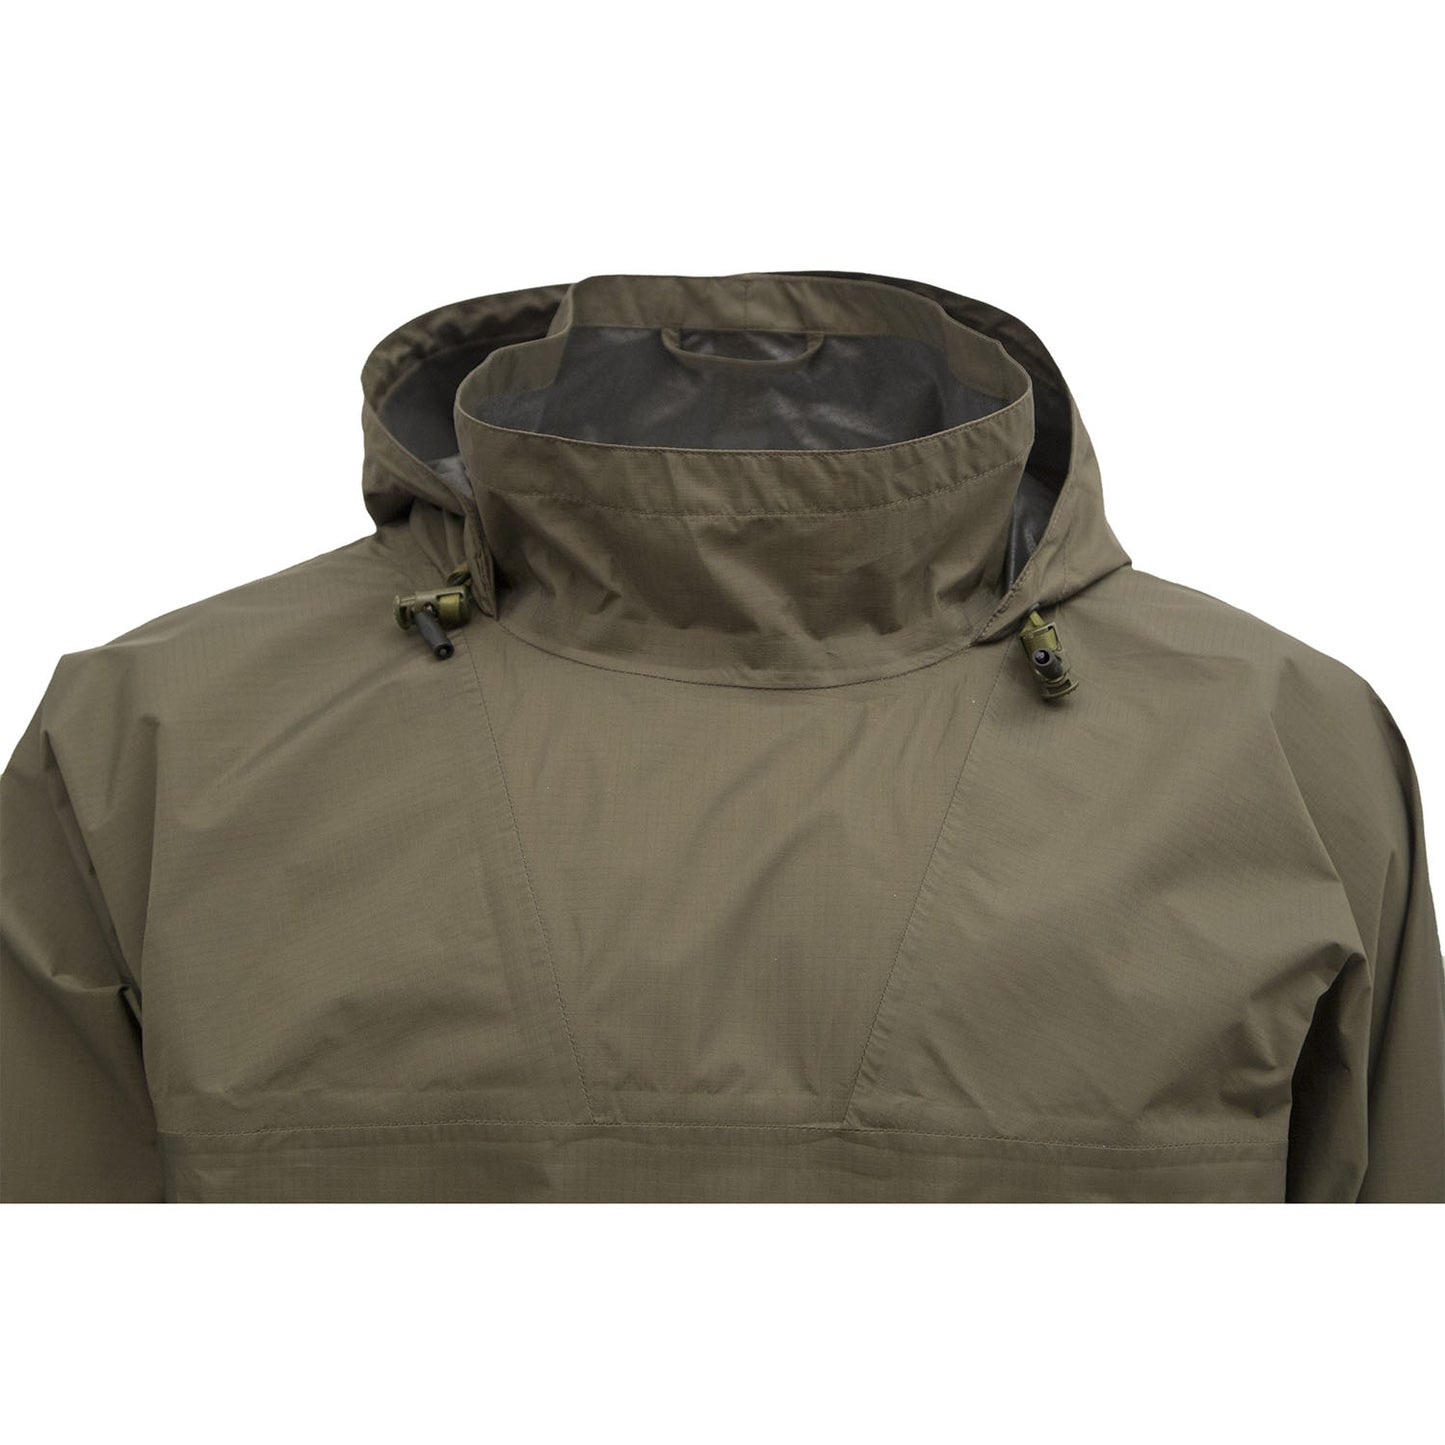 Carinthia Survival Rain Suit Jacket, olive hoher Kragen am Hals